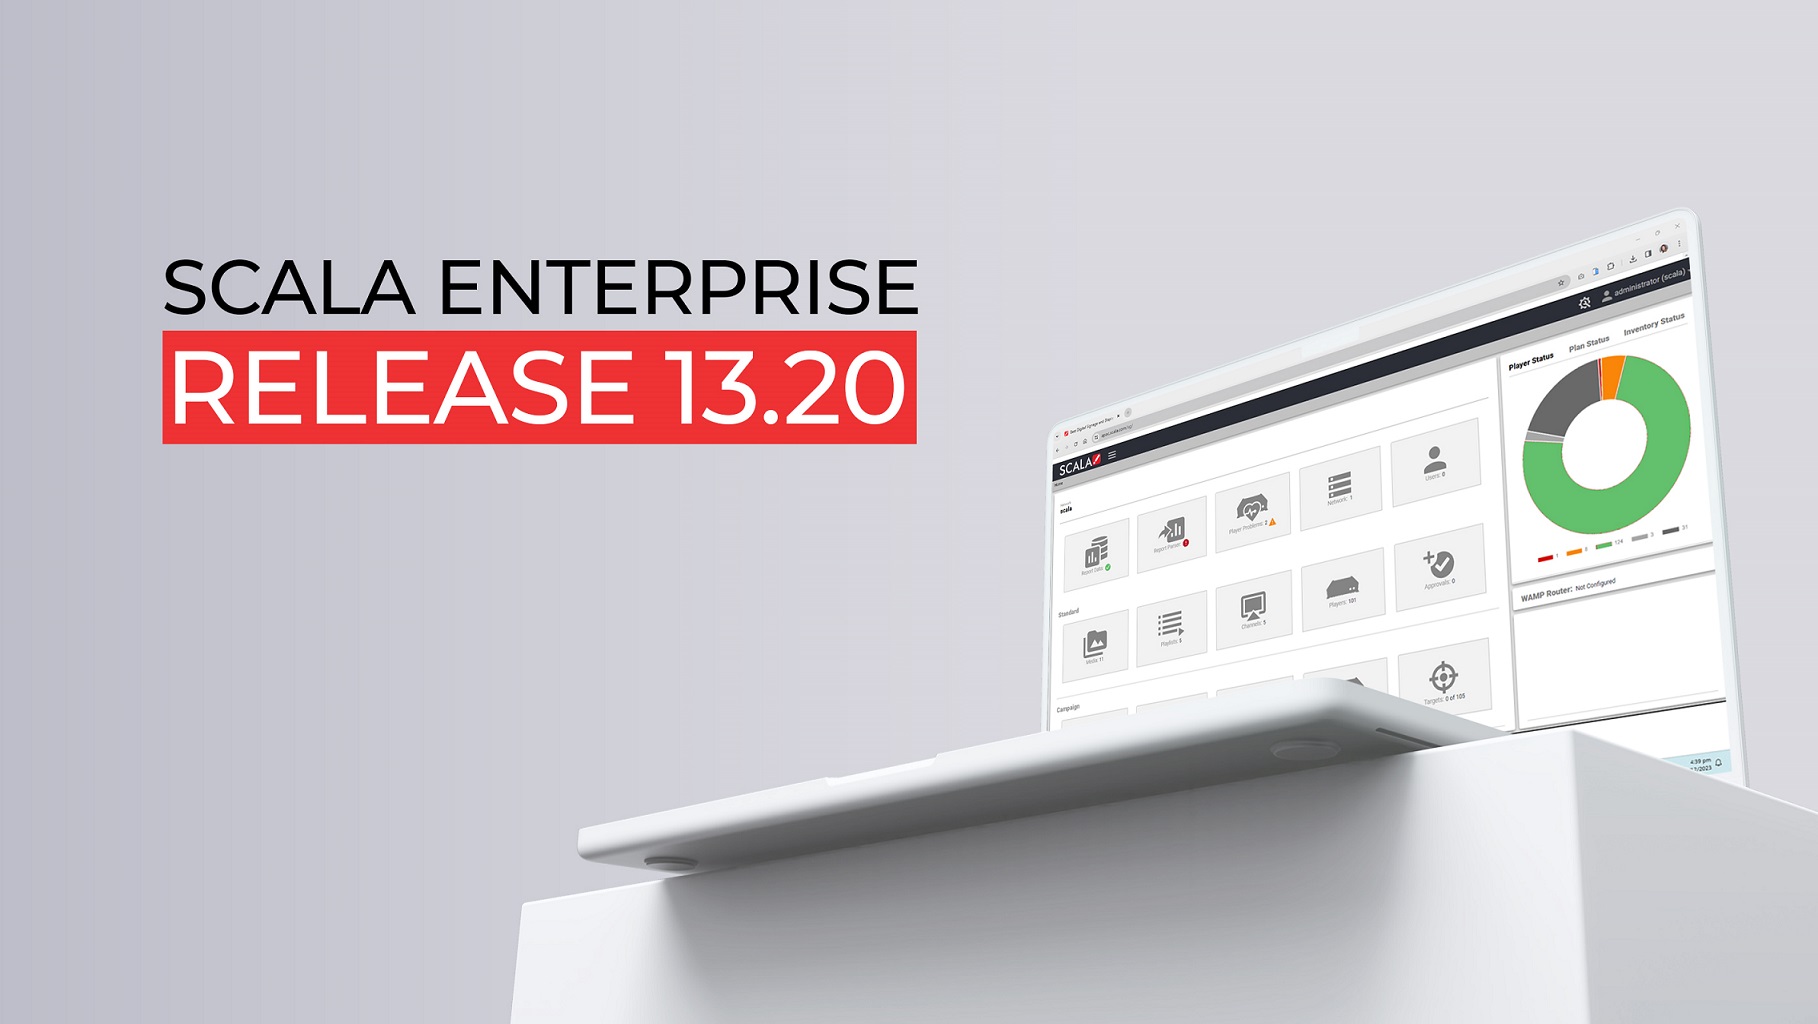 Scala Enterprise 13.10